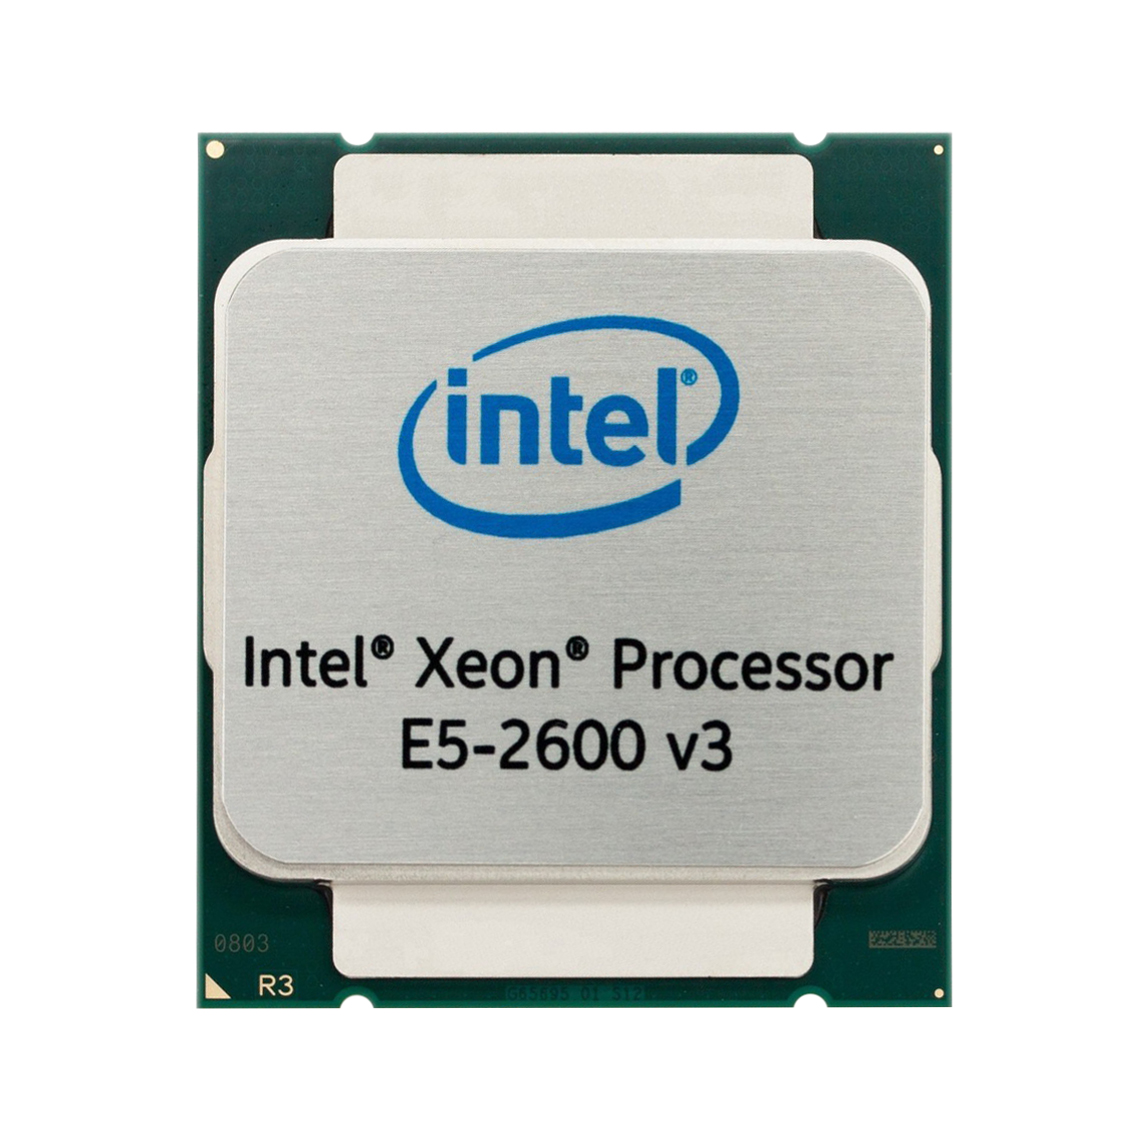 00FL403 IBM 3.50GHz 5.00GT/s DMI2 8MB L3 Cache Intel Xeon E3-1241 v3 Quad Core Processor Upgrade